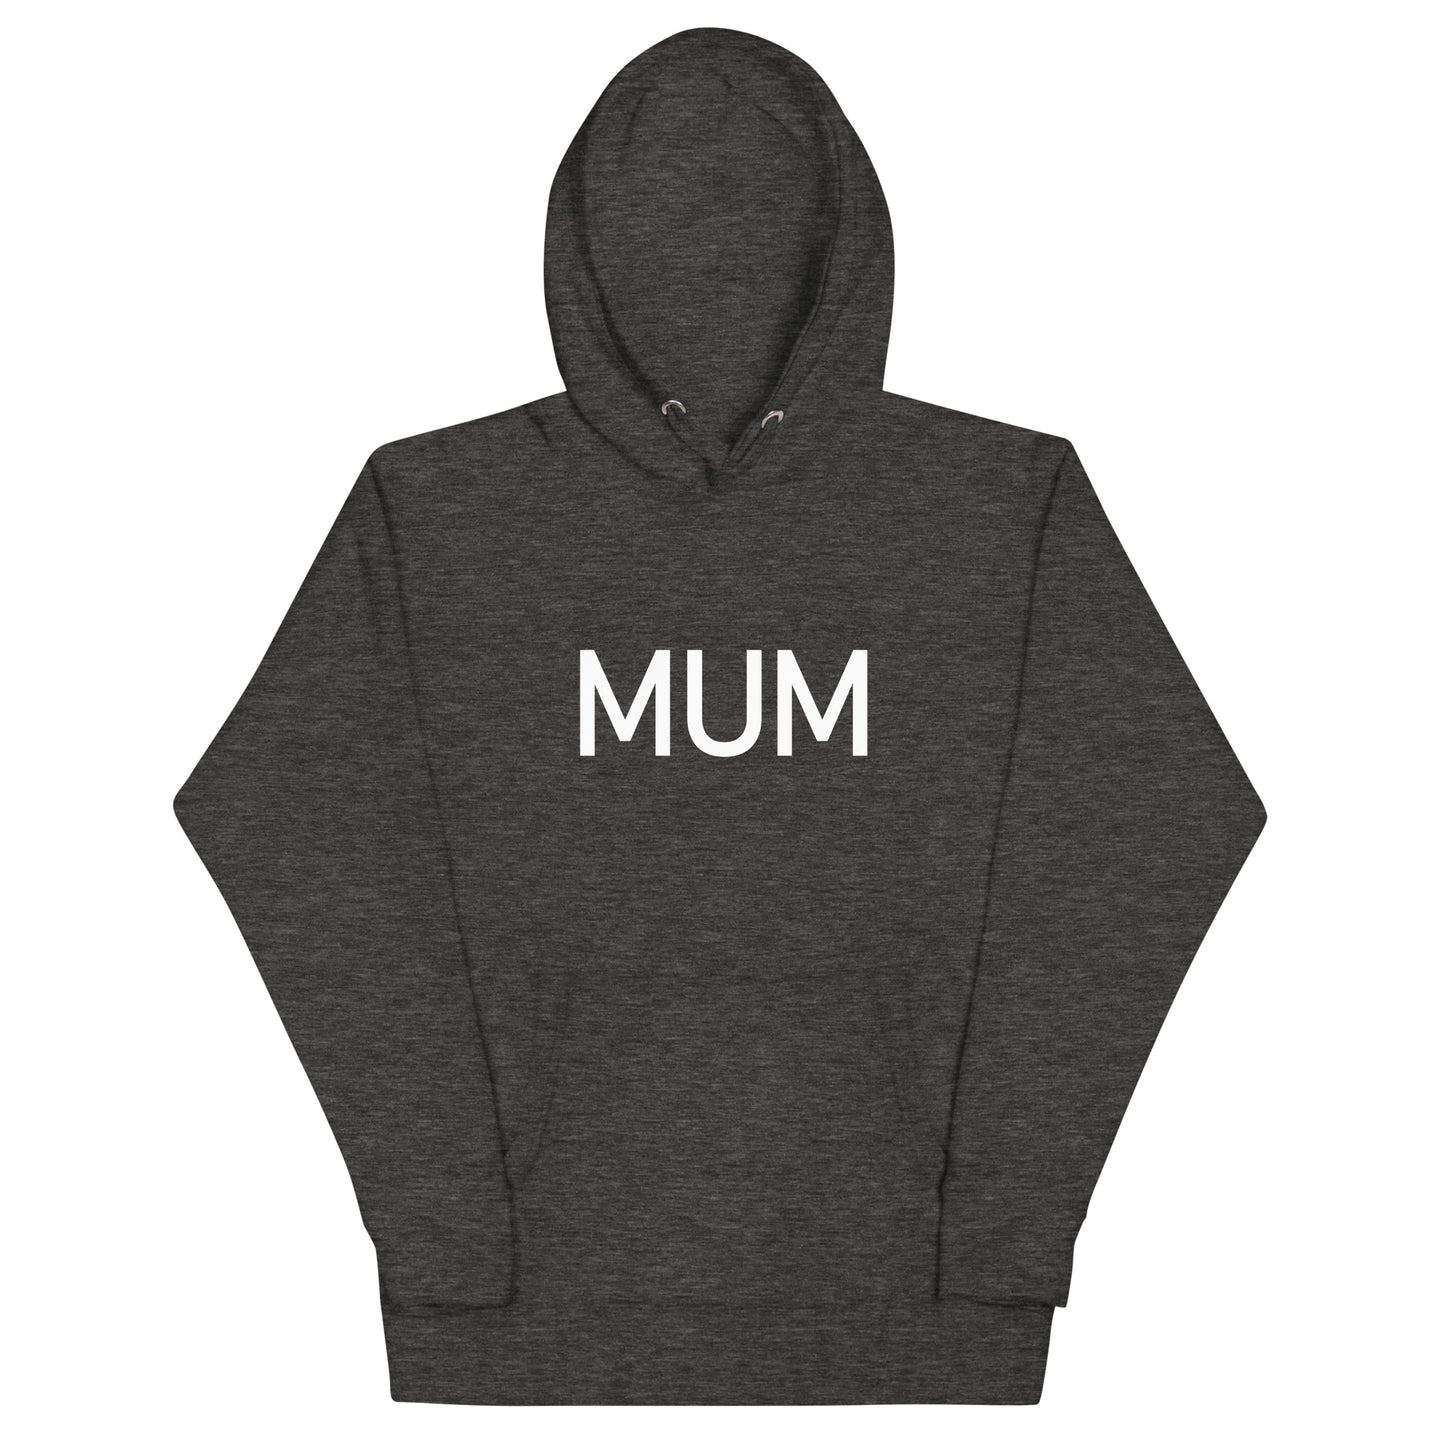 Mum - Sustainably Made Hoodie